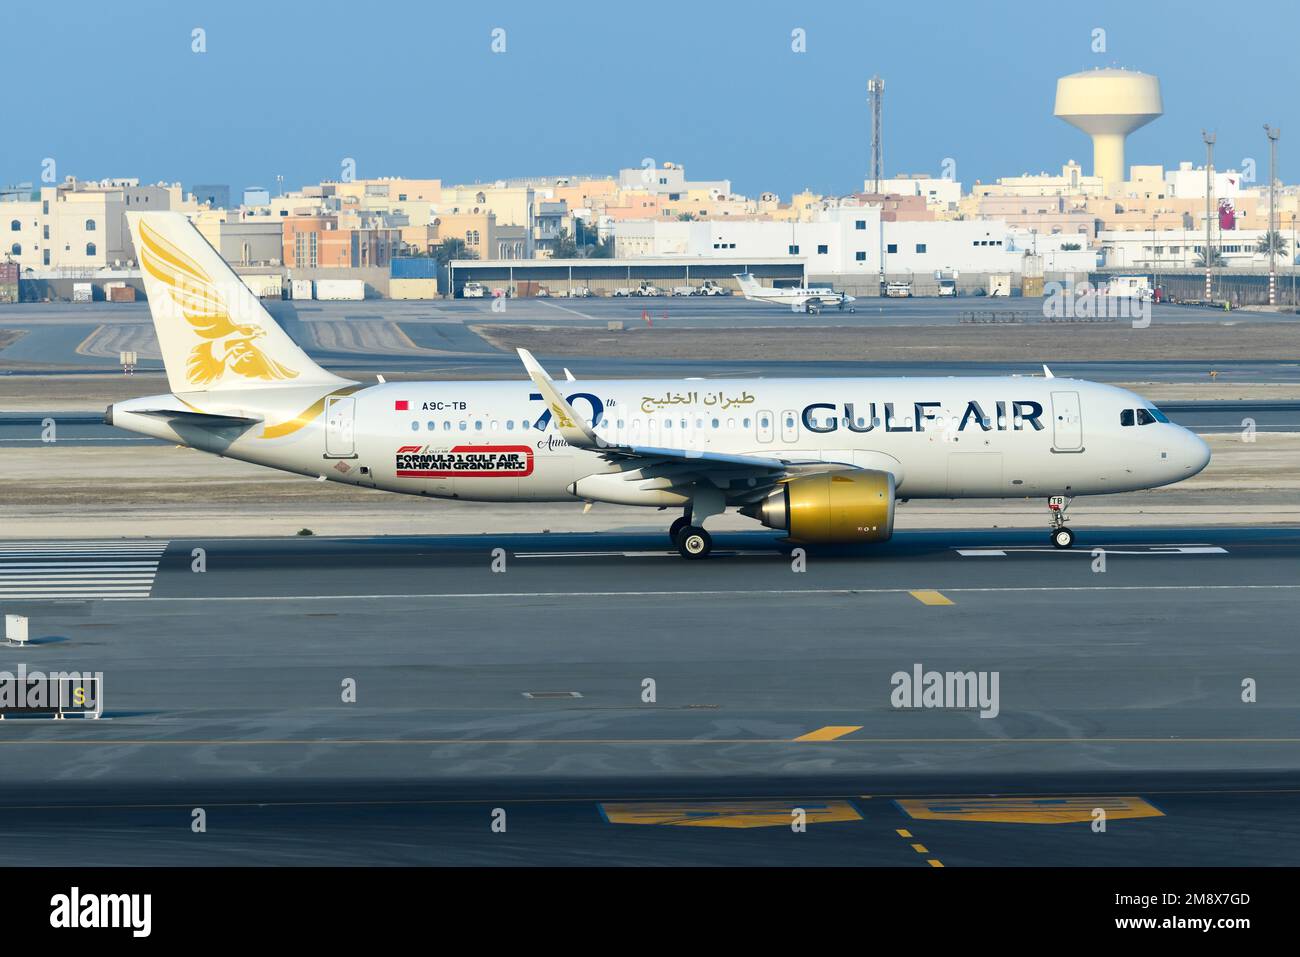 Gulf Air Airbus A320 train en taxi à l'aéroport de Bahreïn. Avion A320neo de Gulfair, connu principalement comme compagnie aérienne Gulf Air. Banque D'Images